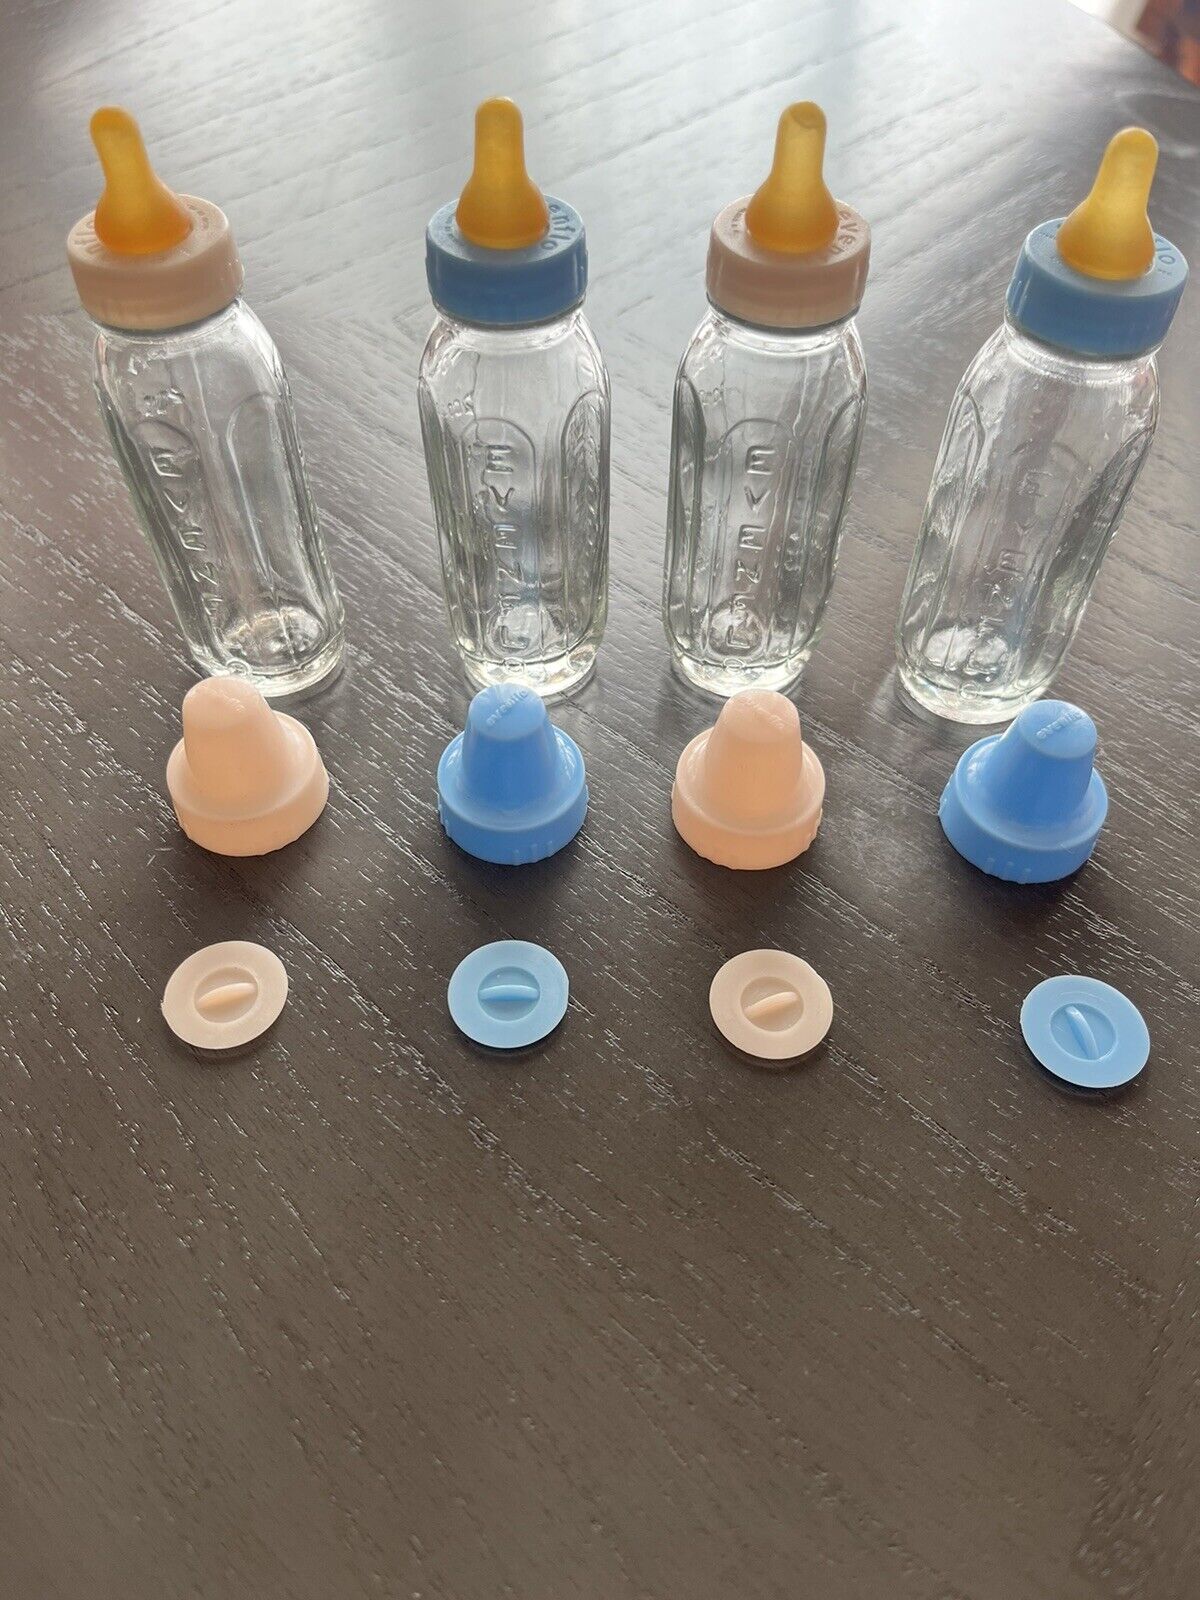 Mini Evenflo Vintage Glass Baby Bottles